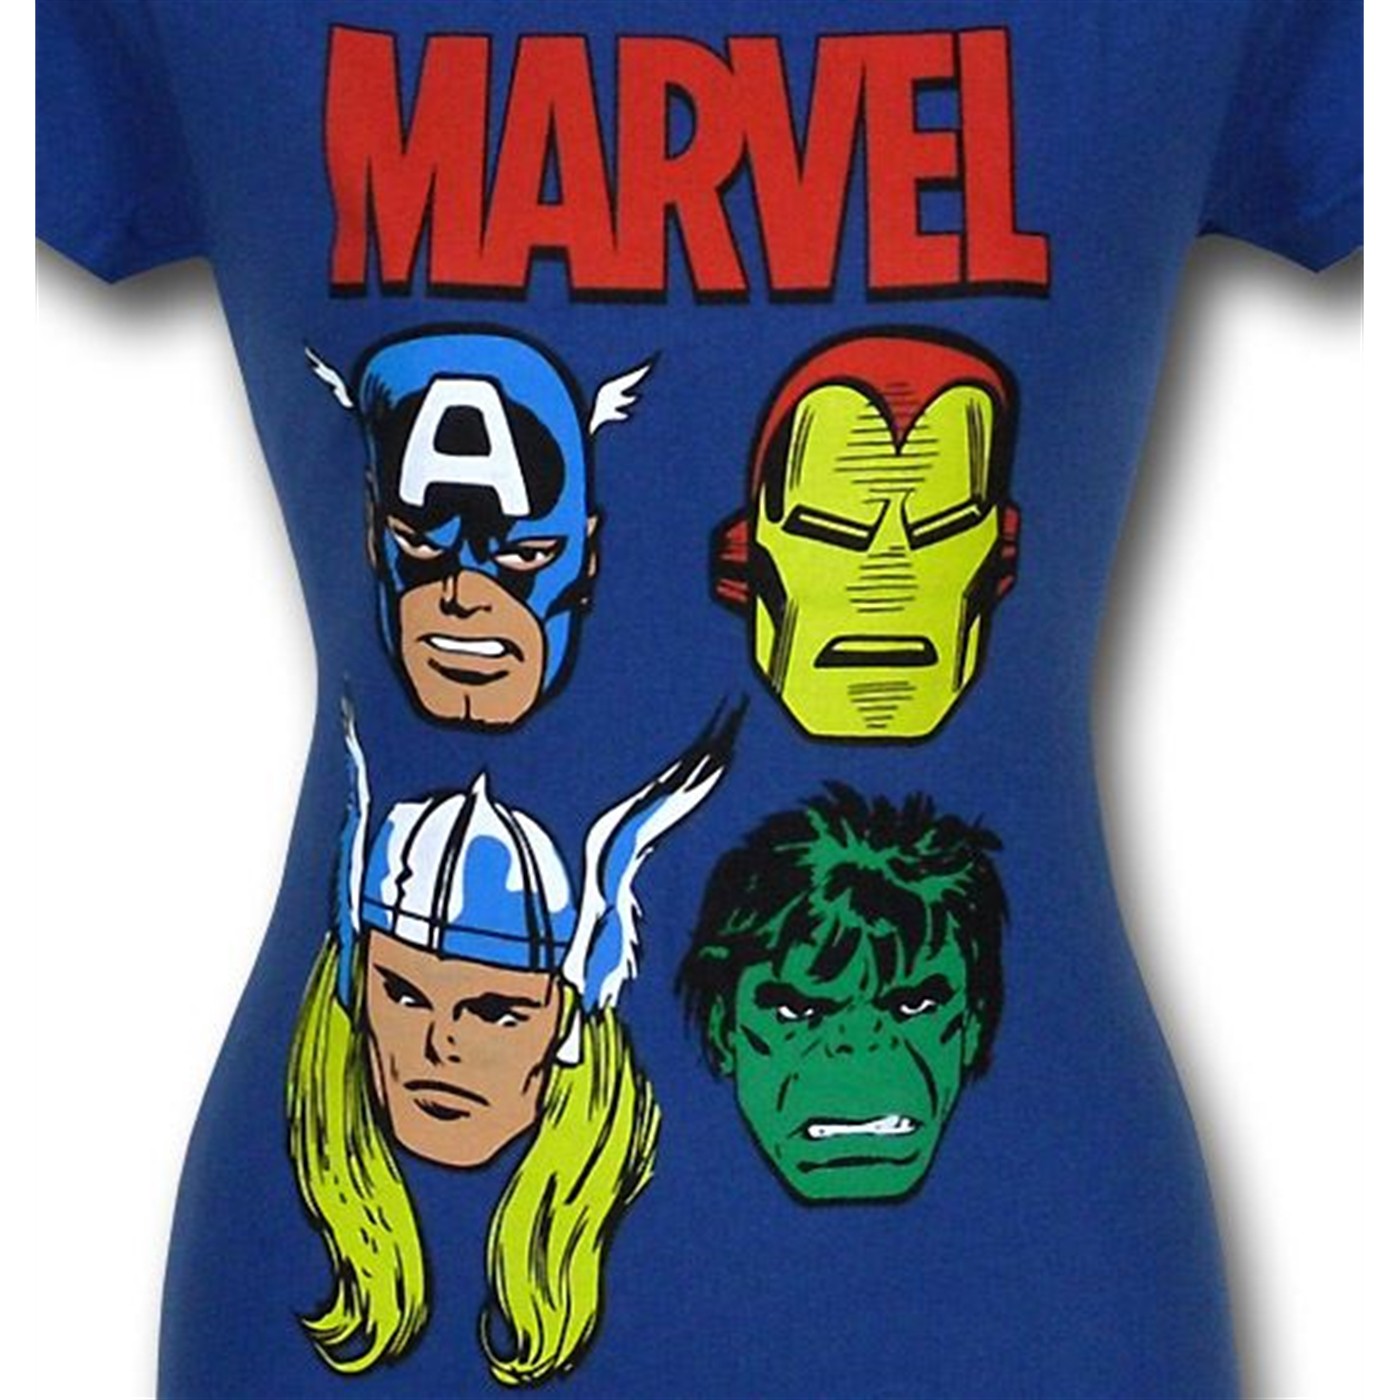 Marvel Avengers Heads Women's T-Shirt